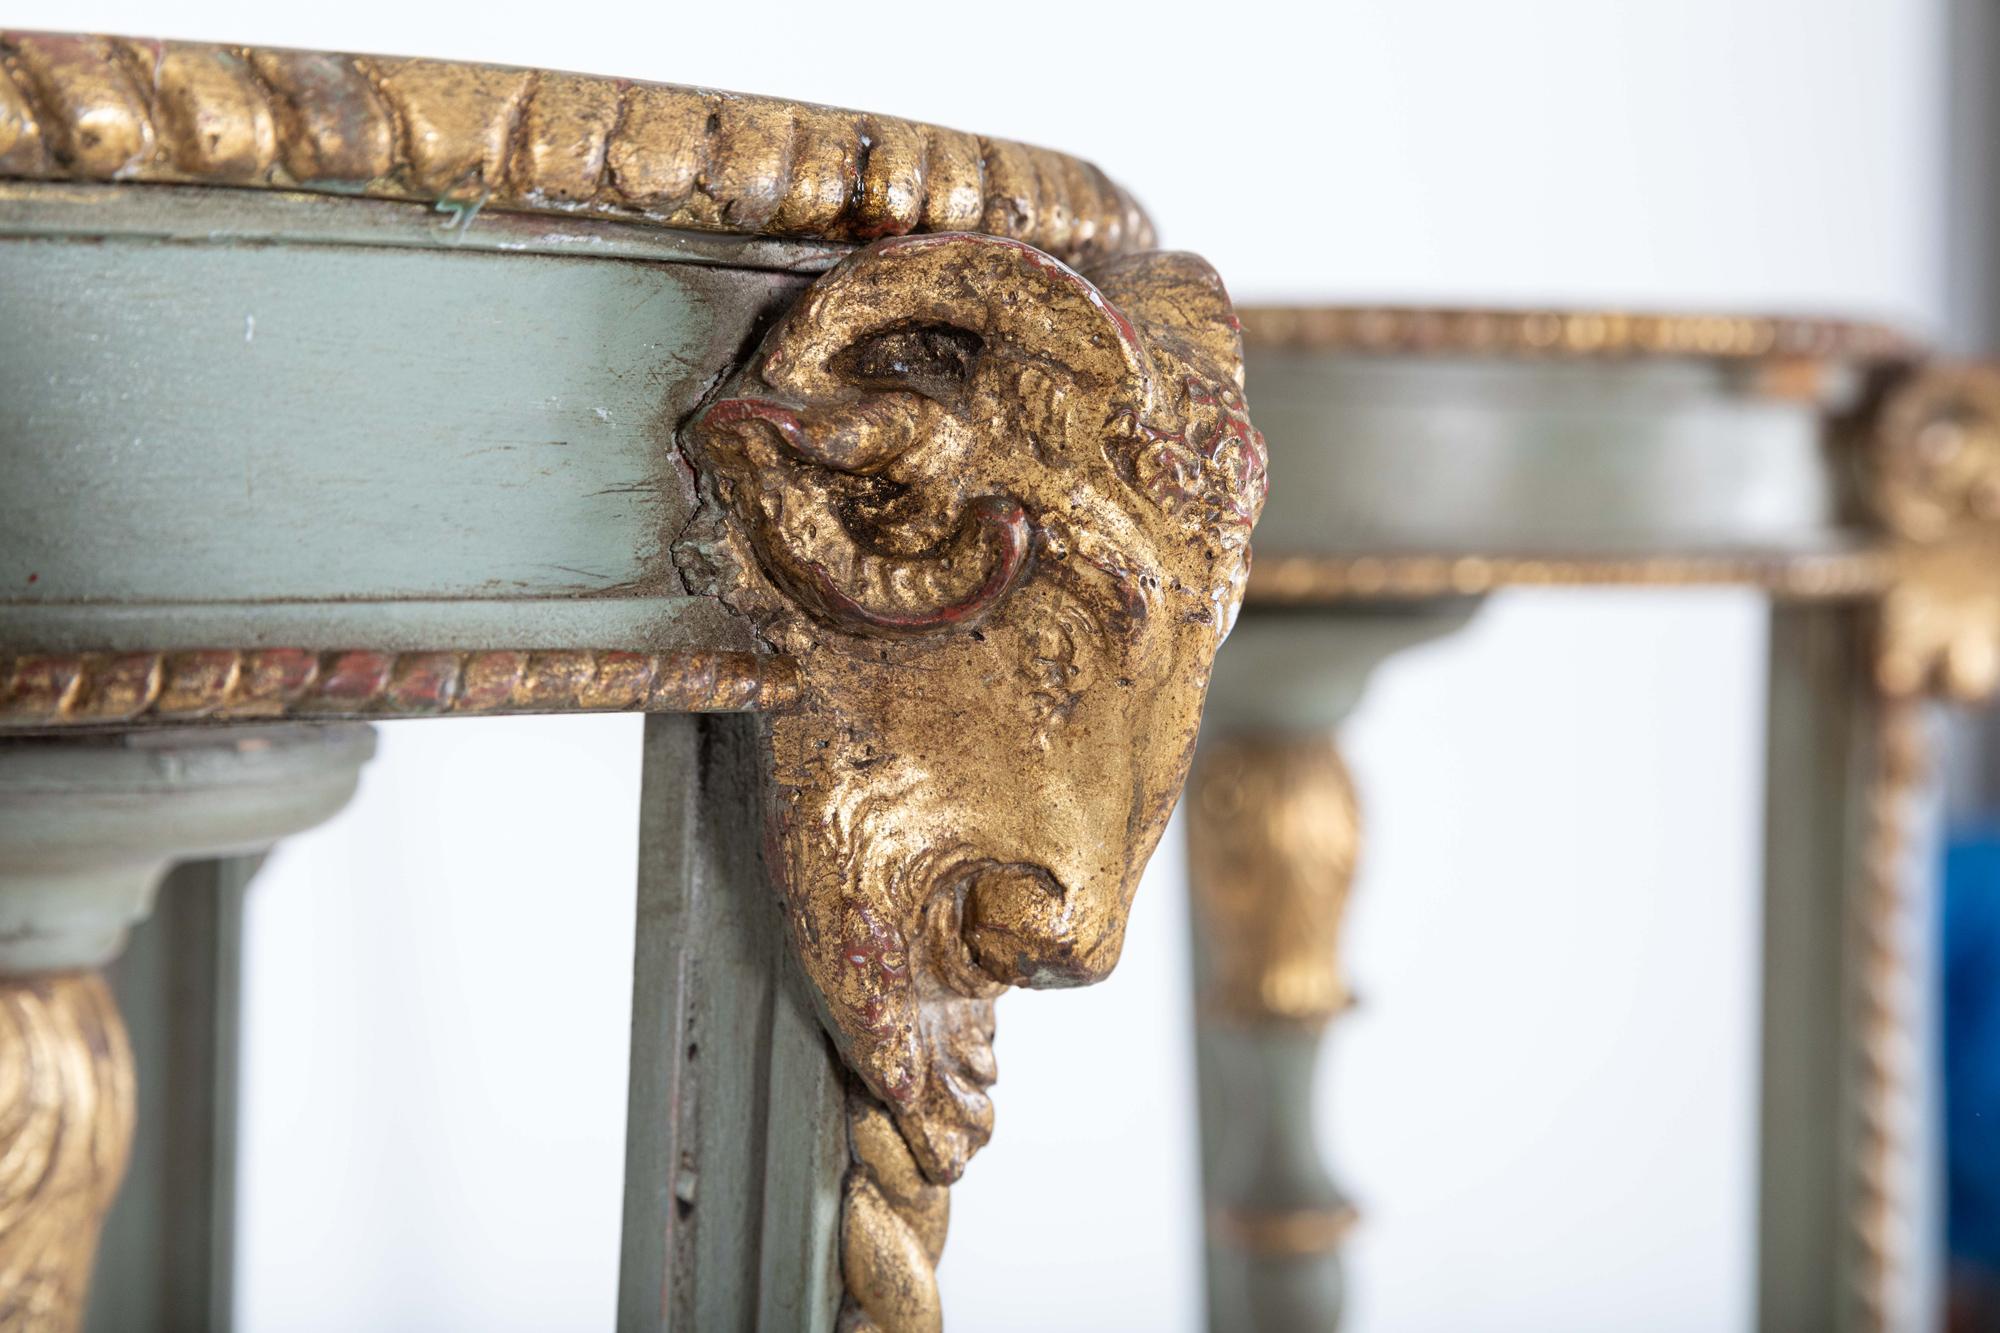 Um 1810

Pair Tall English Regency Rams Head Parcel-Gilt Carved Torcheres- Display Stands

Ein Paar hohe dreiförmige Fackeln aus dem 19. Jahrhundert mit runden Tischplatten mit vergoldeten Widderköpfen und verdrehten Verzierungen an den Seiten, die